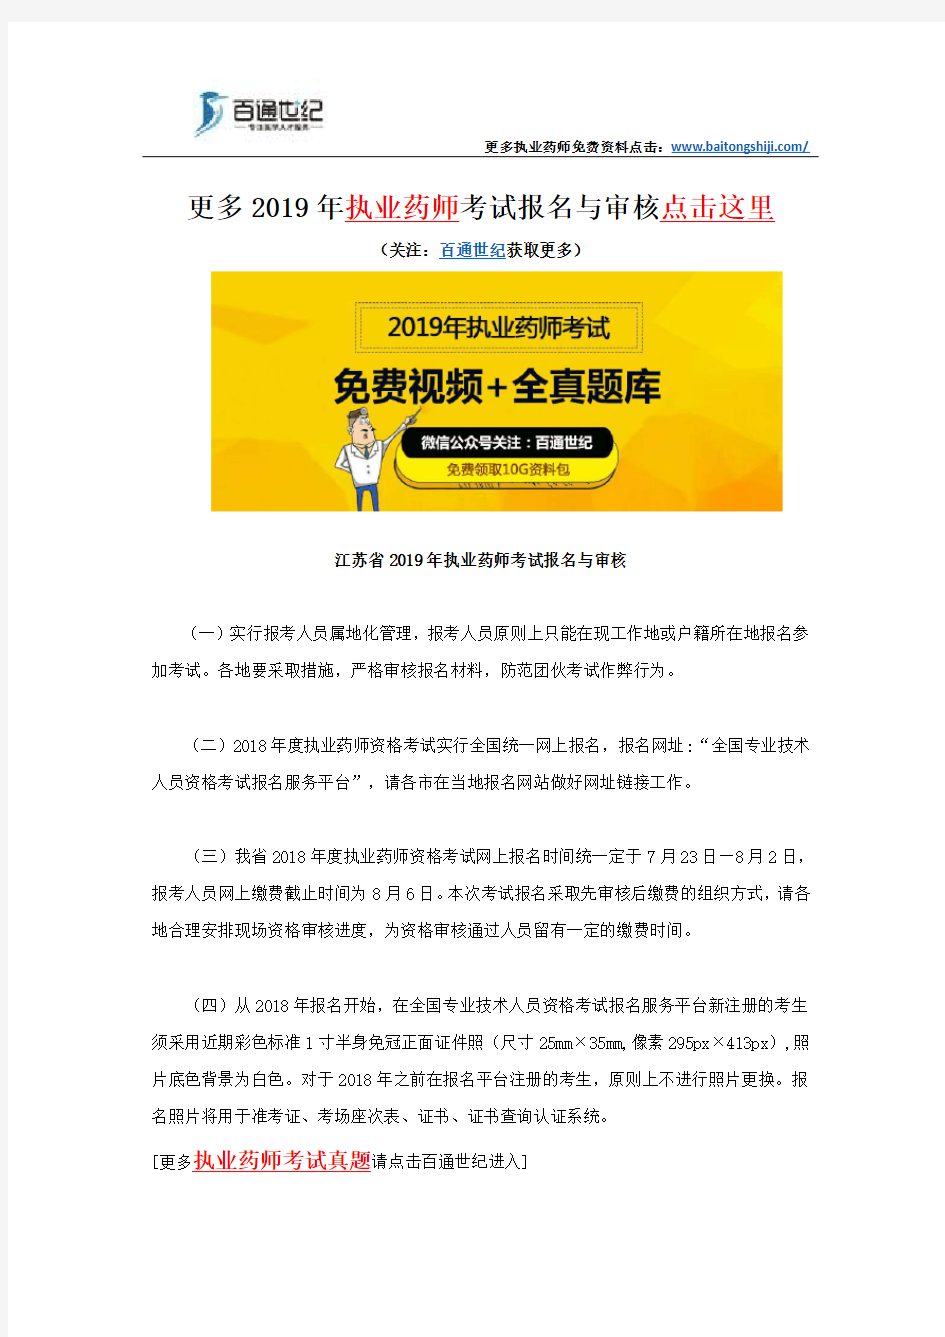 江苏省2019年执业药师考试报名与审核